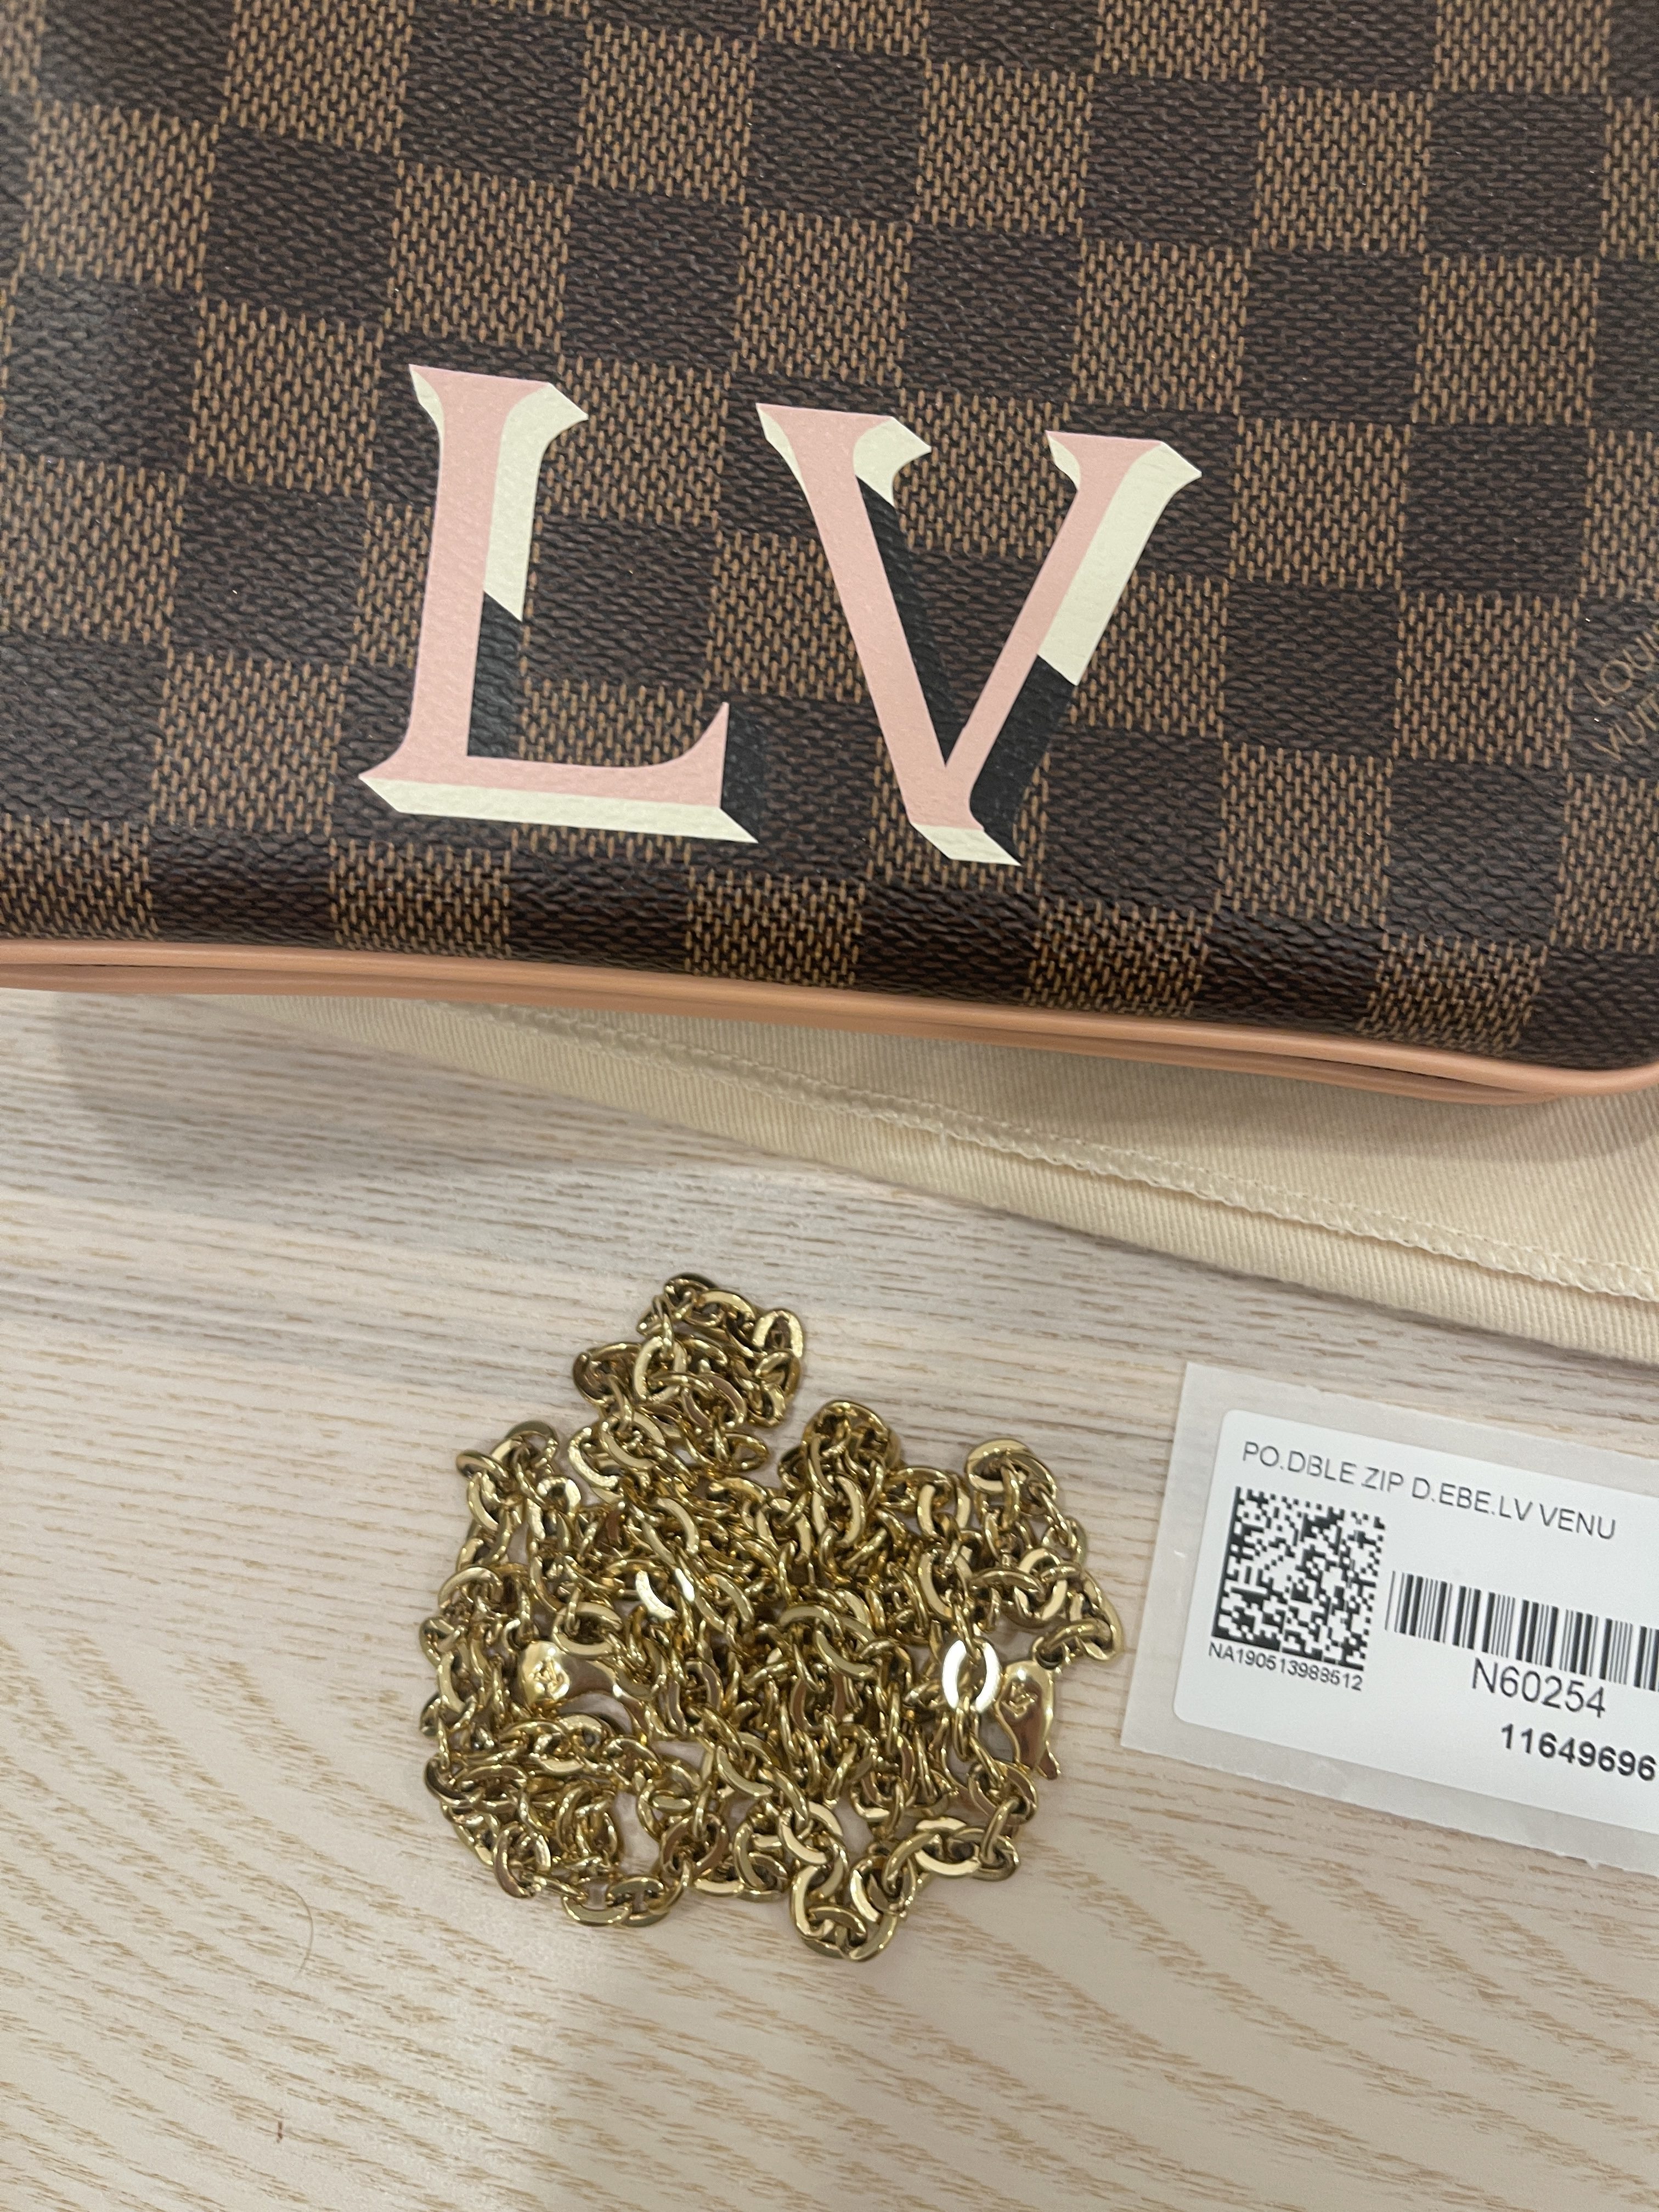 Shop Louis Vuitton DAMIER 2021-22FW Double zip pochette (N60460